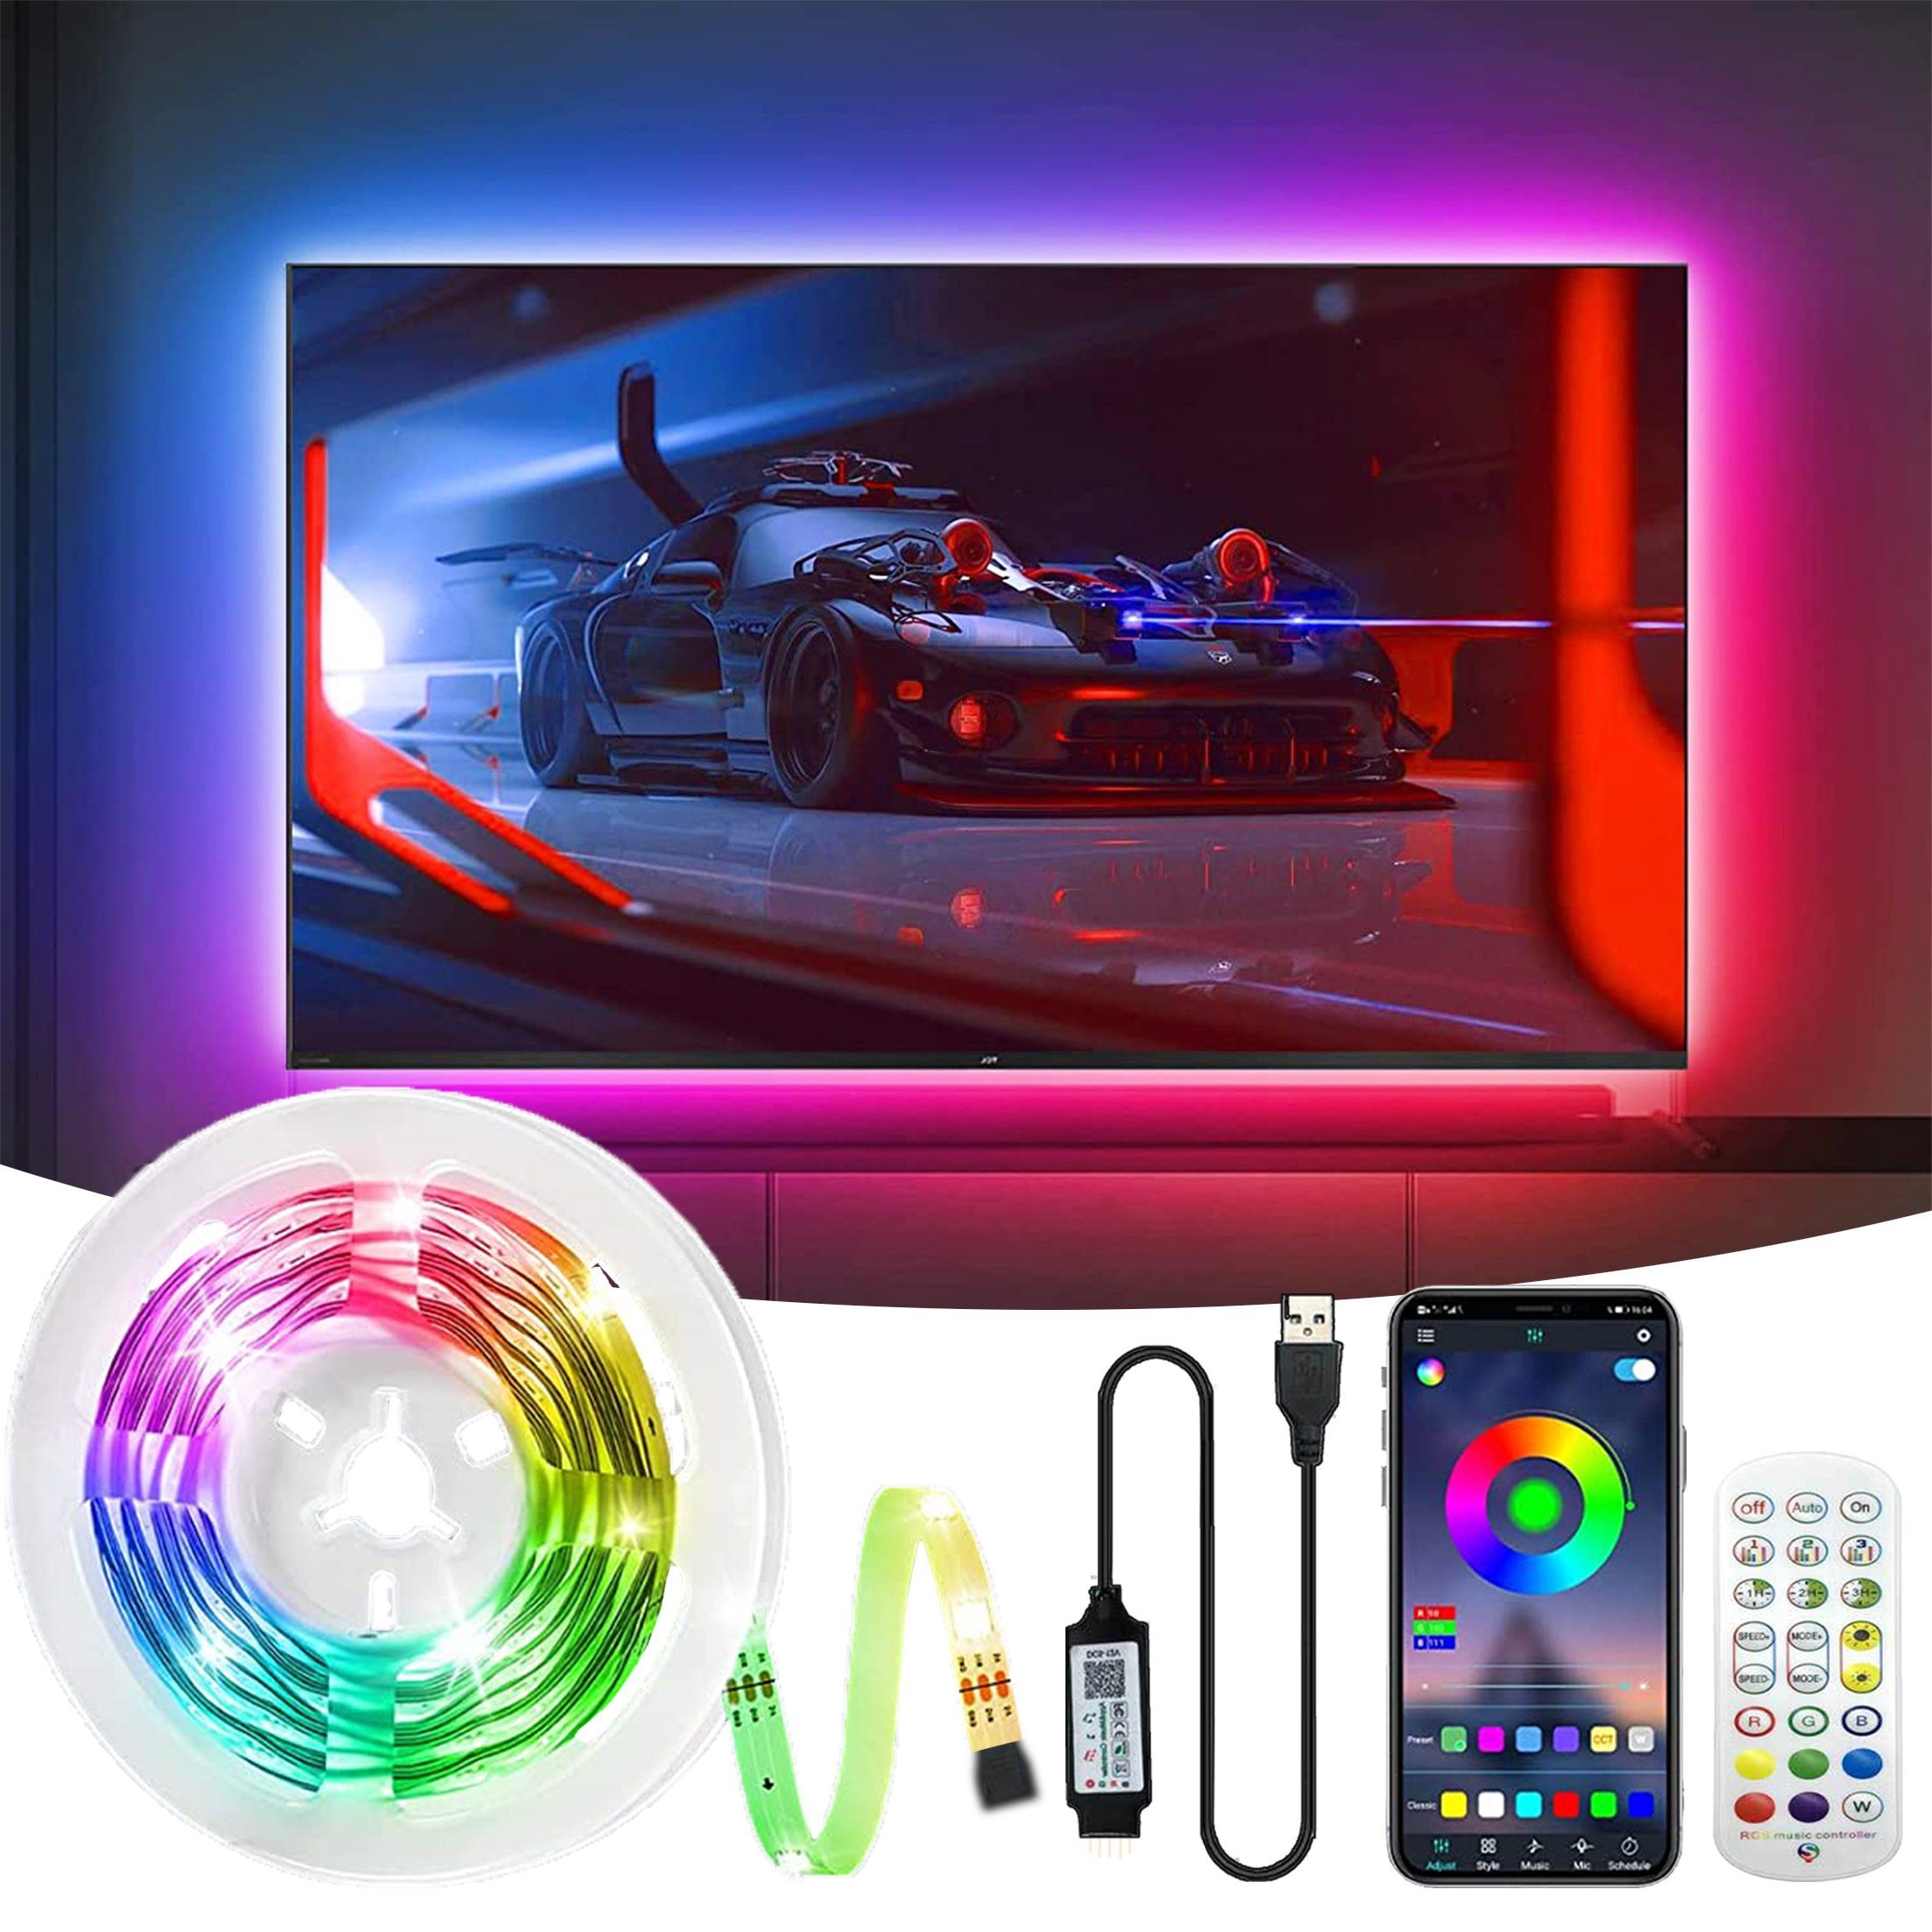 LANOR LED-Streifen TV-Hintergrundbeleuchtung, LED-Licht, Bluetooth APP, Mit Fernbedienung, Sound/Musik-Modus, IP65 tropfwassergeschützt, 3M wasserdicht